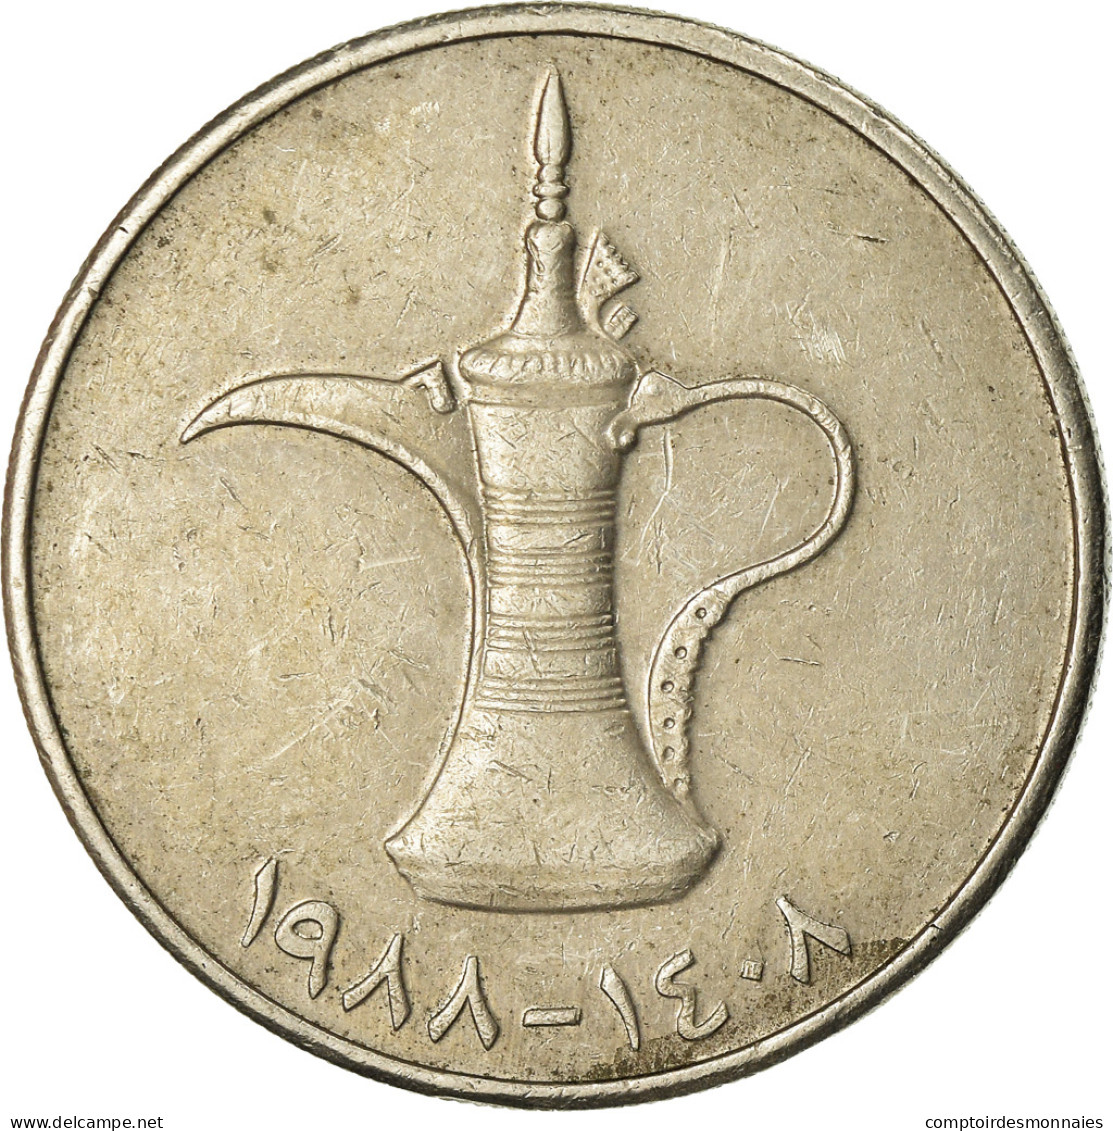 Monnaie, United Arab Emirates, Dirham, 1988, British Royal Mint, TTB - United Arab Emirates